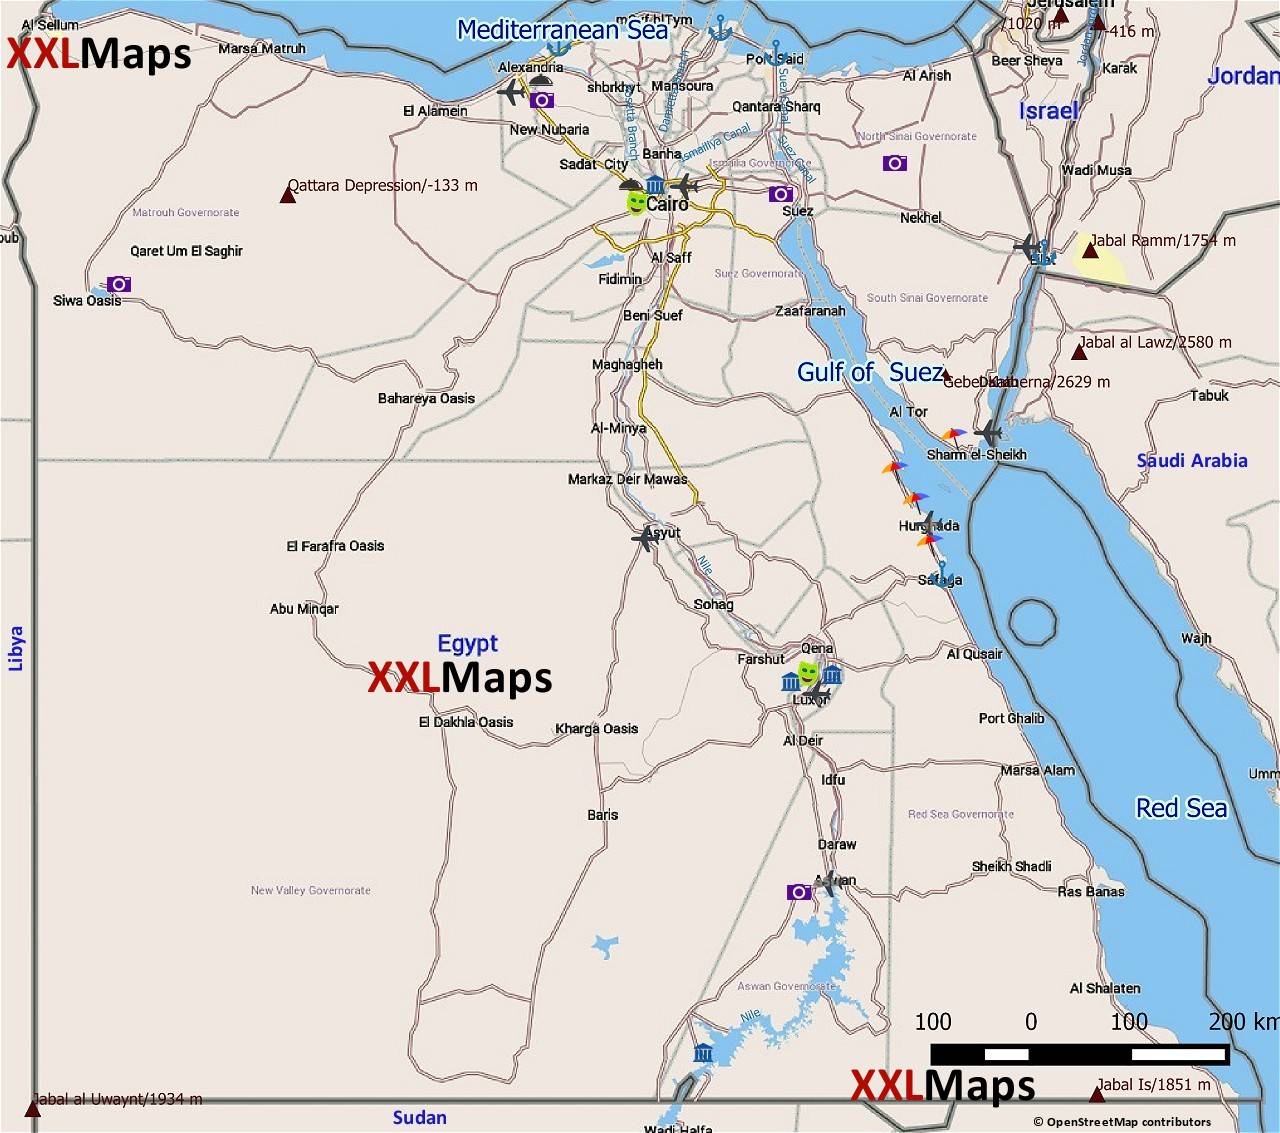 Touristische Karte von Ägypten